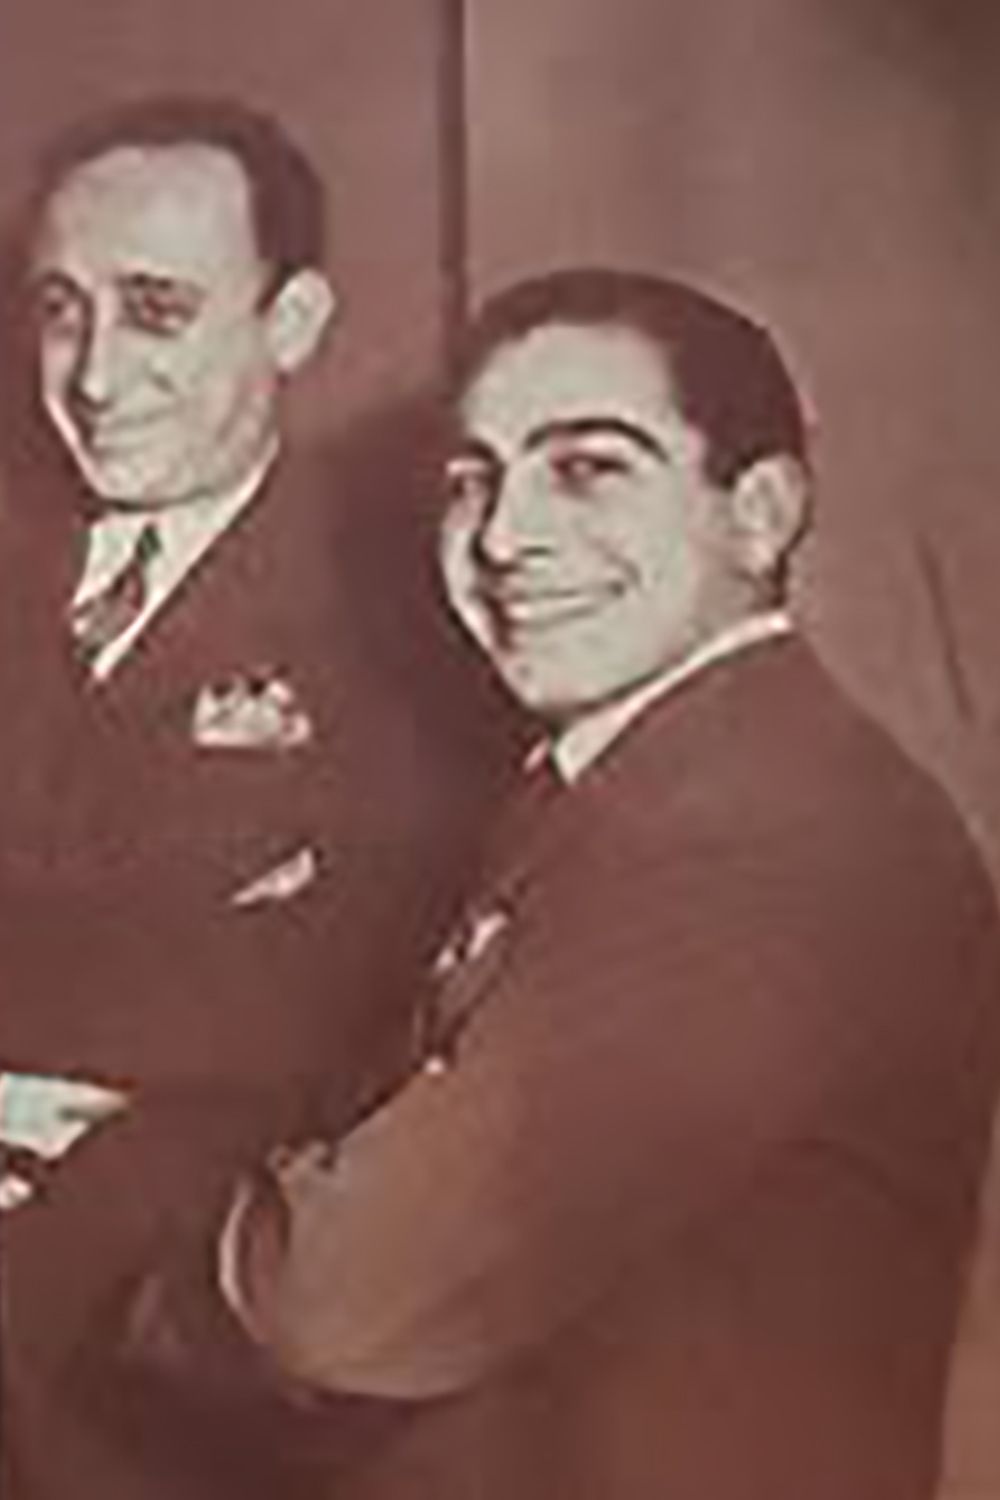 Juan Carlos Lamas & Juan D'Arienzo, Argentine Tango music creators.